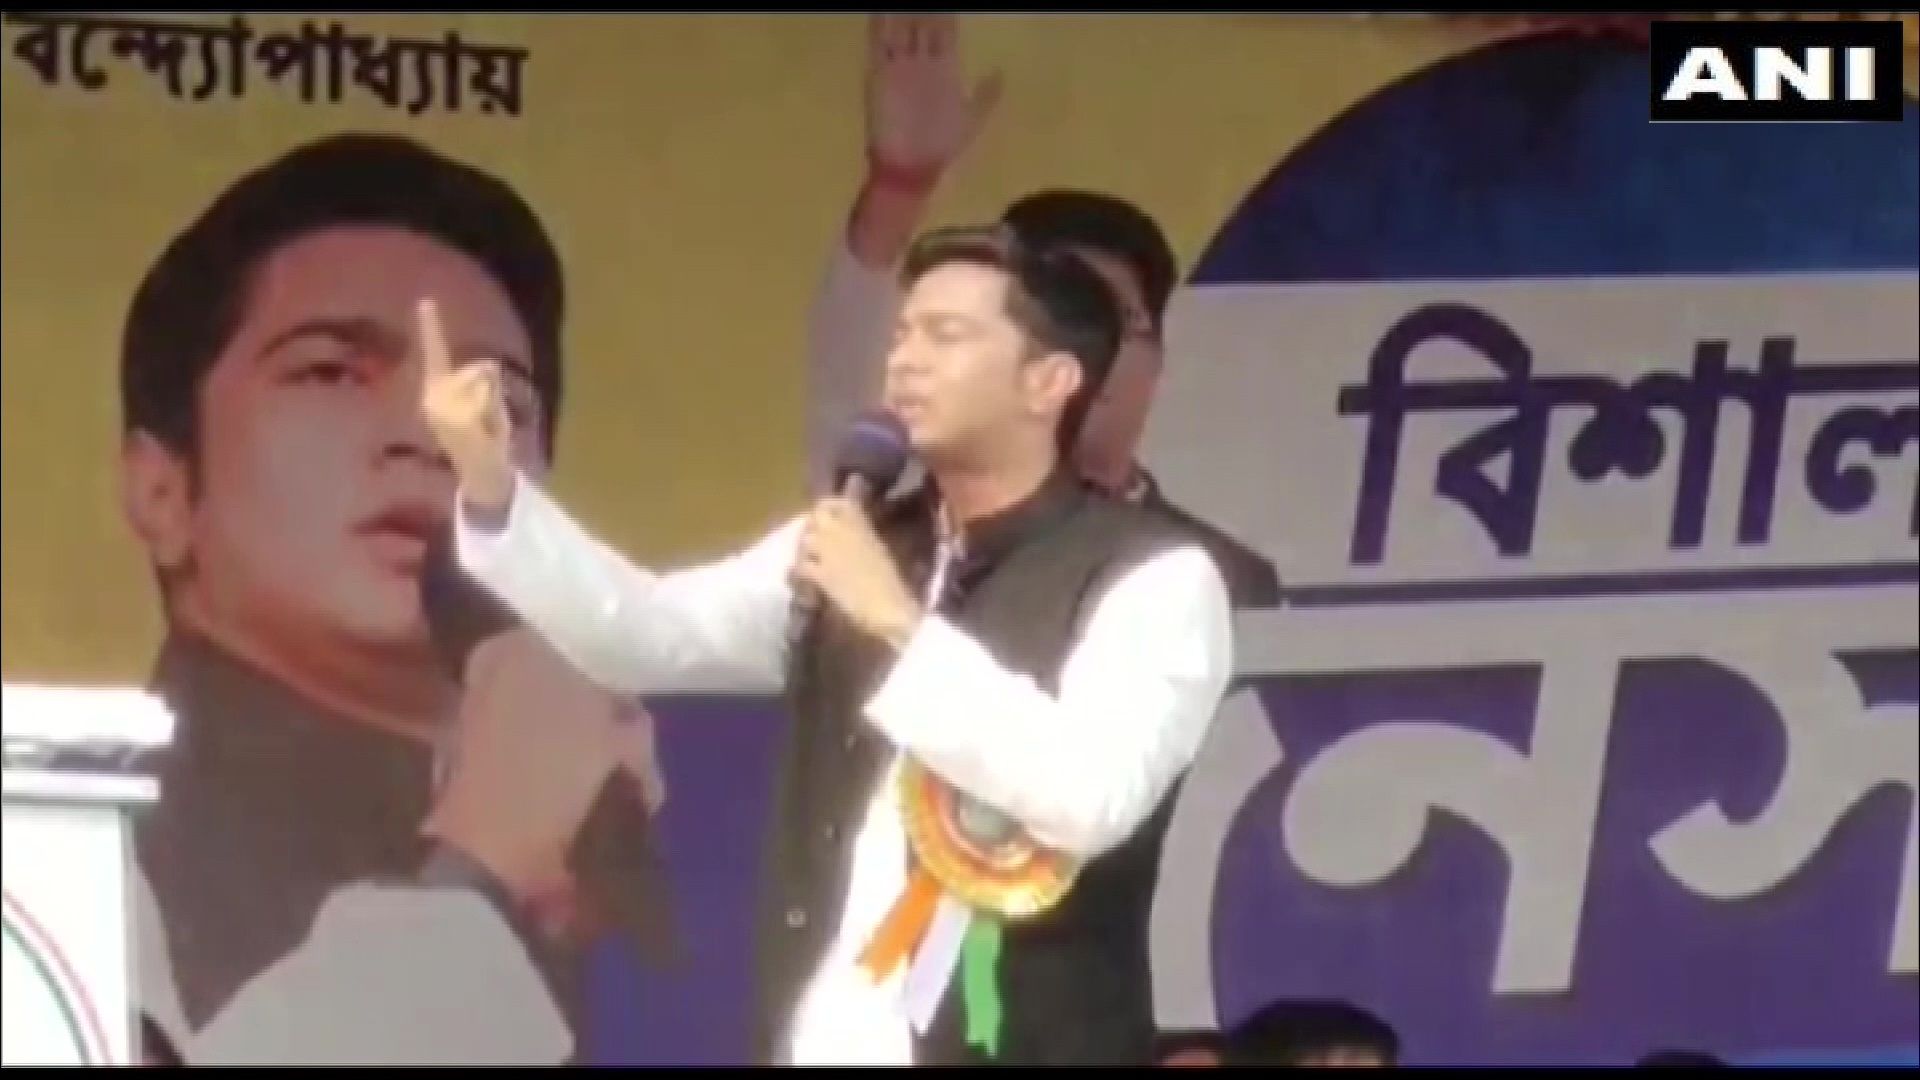 Mamata Banerjee’s nephew Abhishek Banerjee dares BJP to bring anti-nepotism law